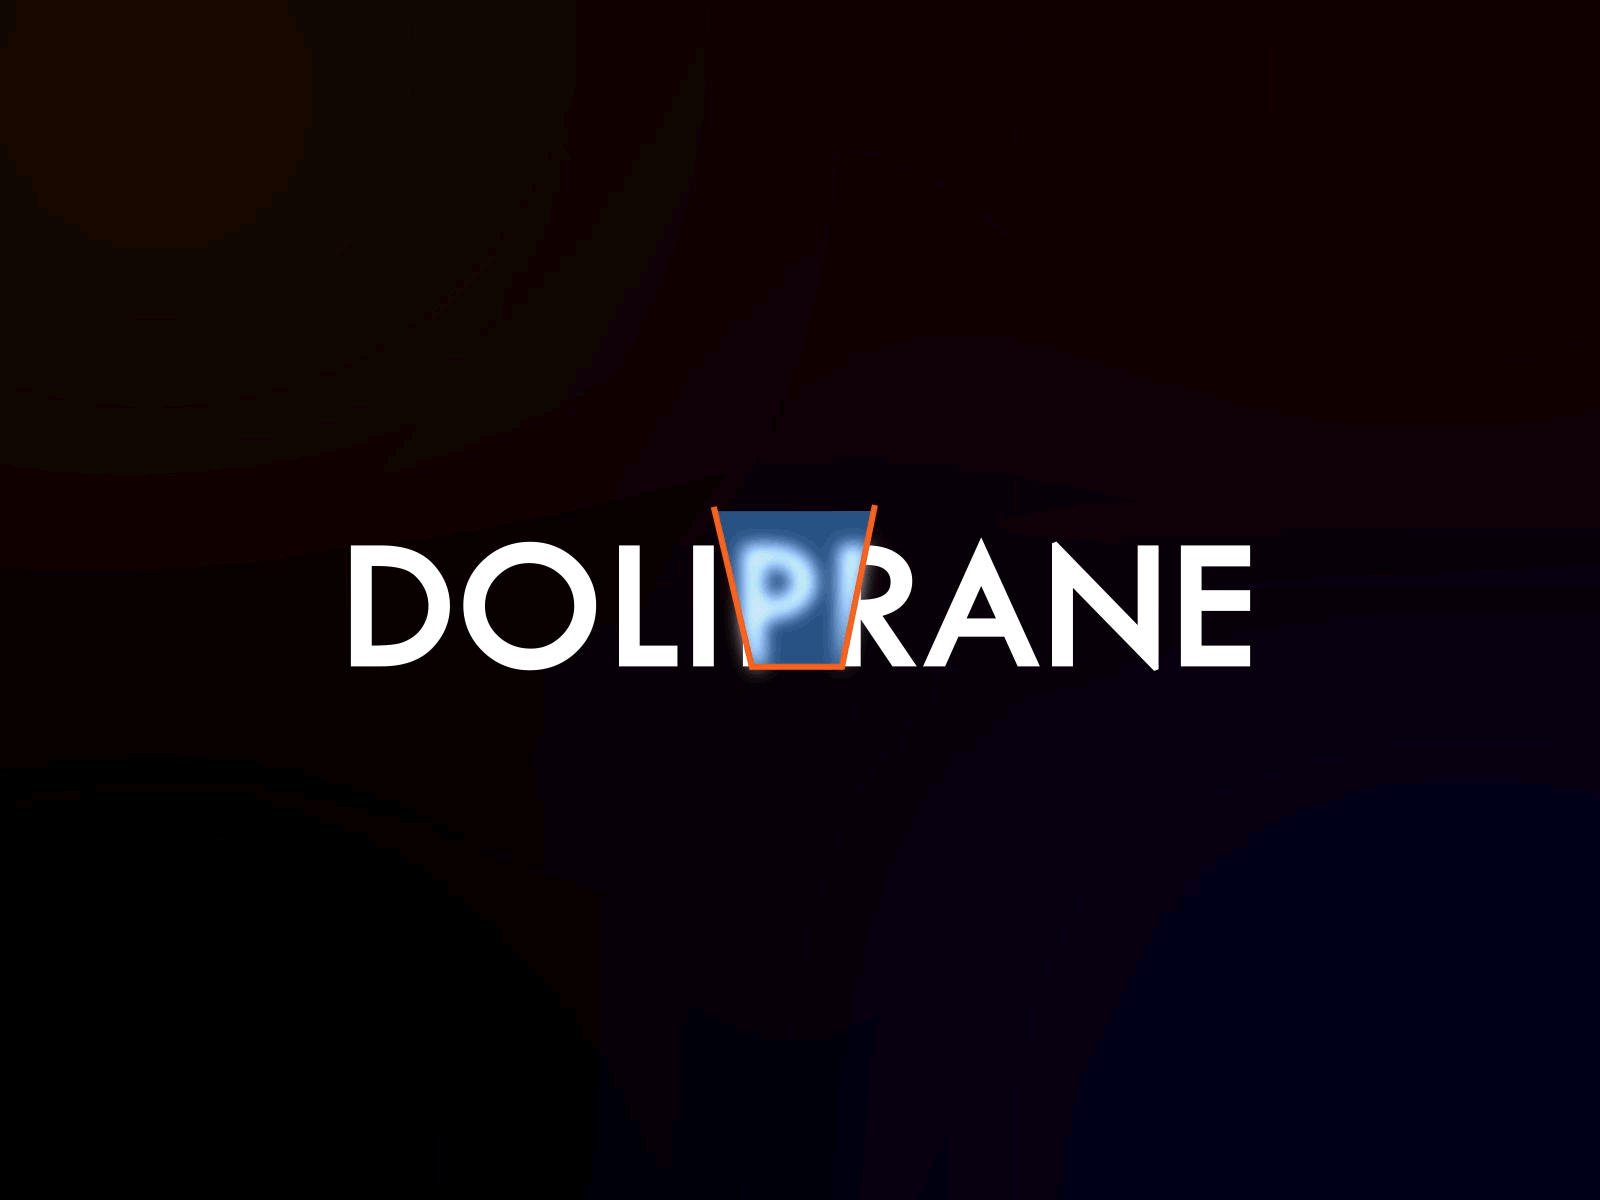 DOLIPRANE - Animation